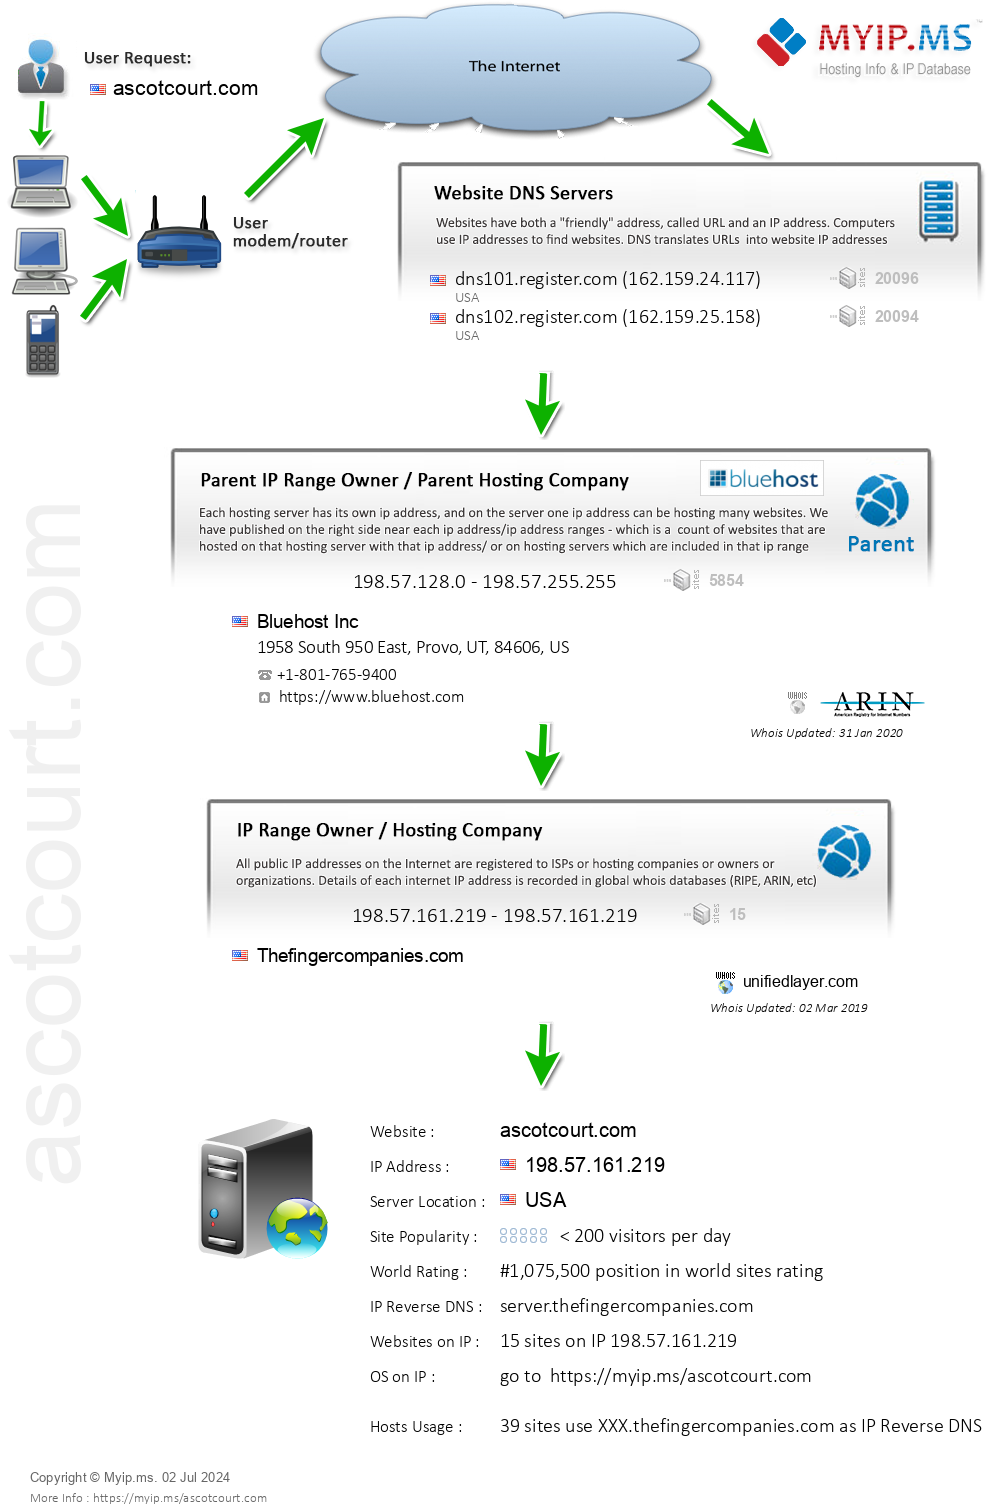 Ascotcourt.com - Website Hosting Visual IP Diagram